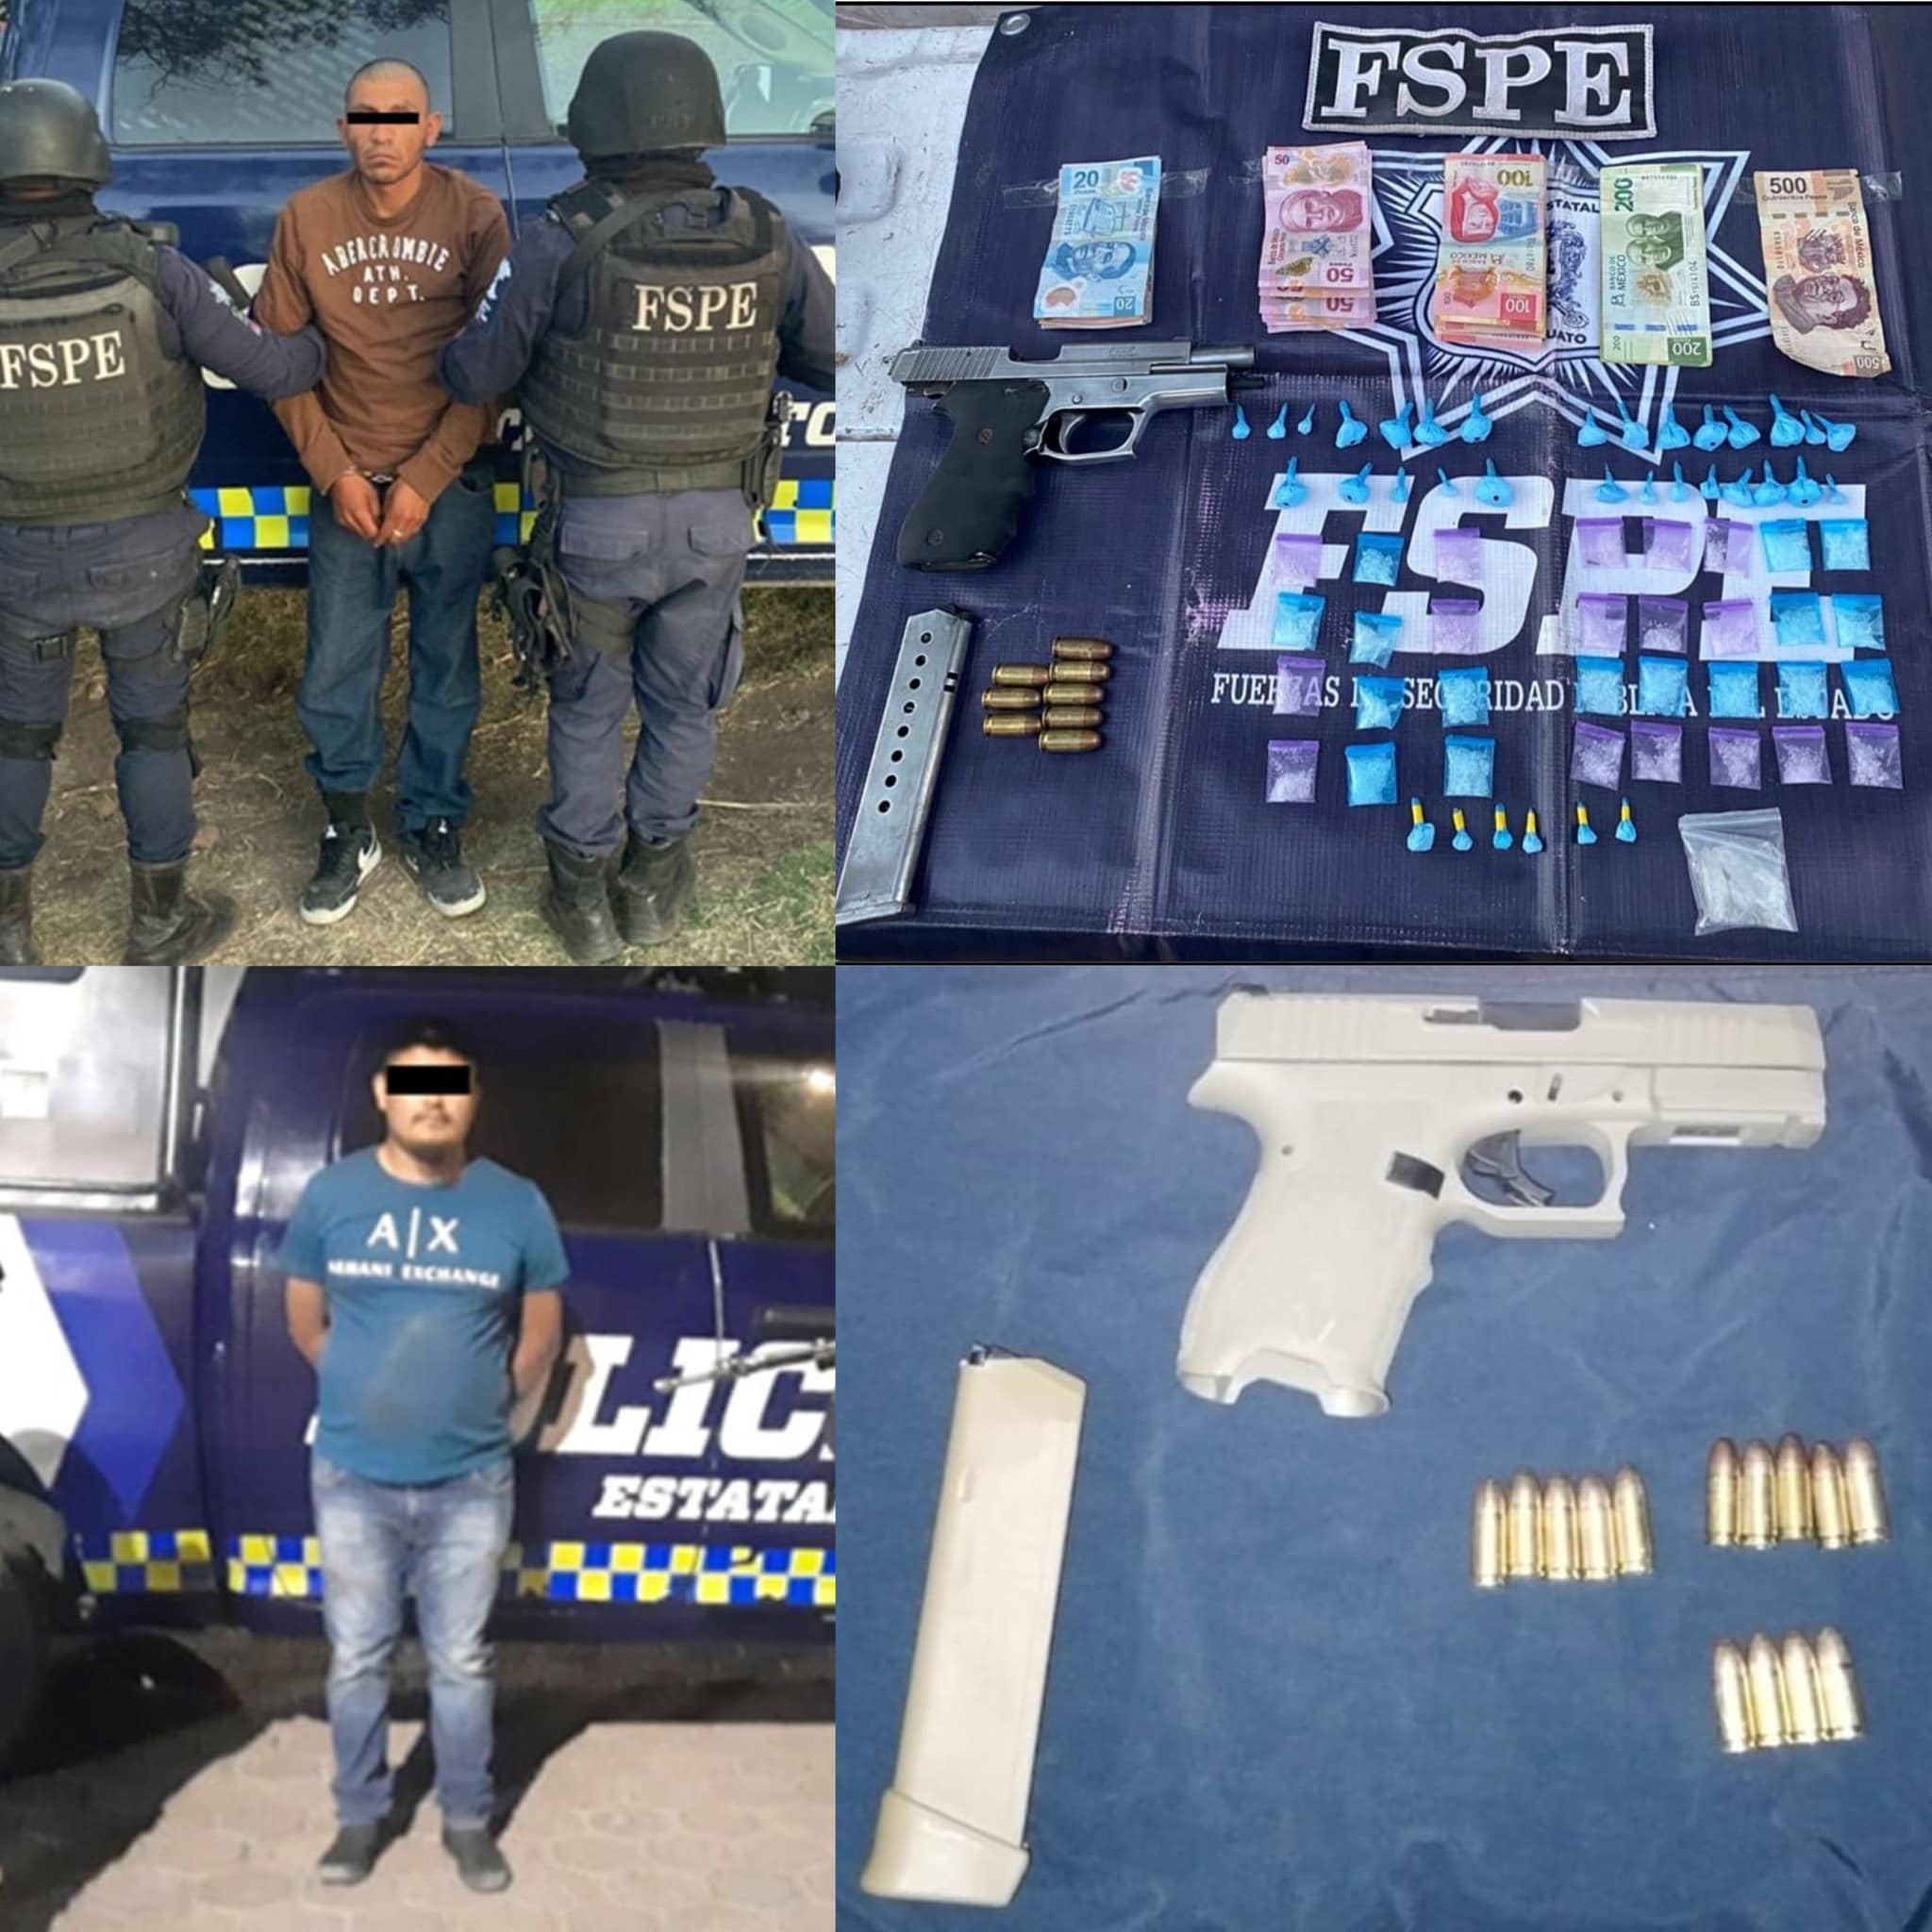 Derivado de los diversos patrullajes realizados por elementos de las Fuerzas de Seguridad Pública del Estado se logró la detención de cuatro personas, por la posesión de 198 dosis de droga cristal y mariguana.